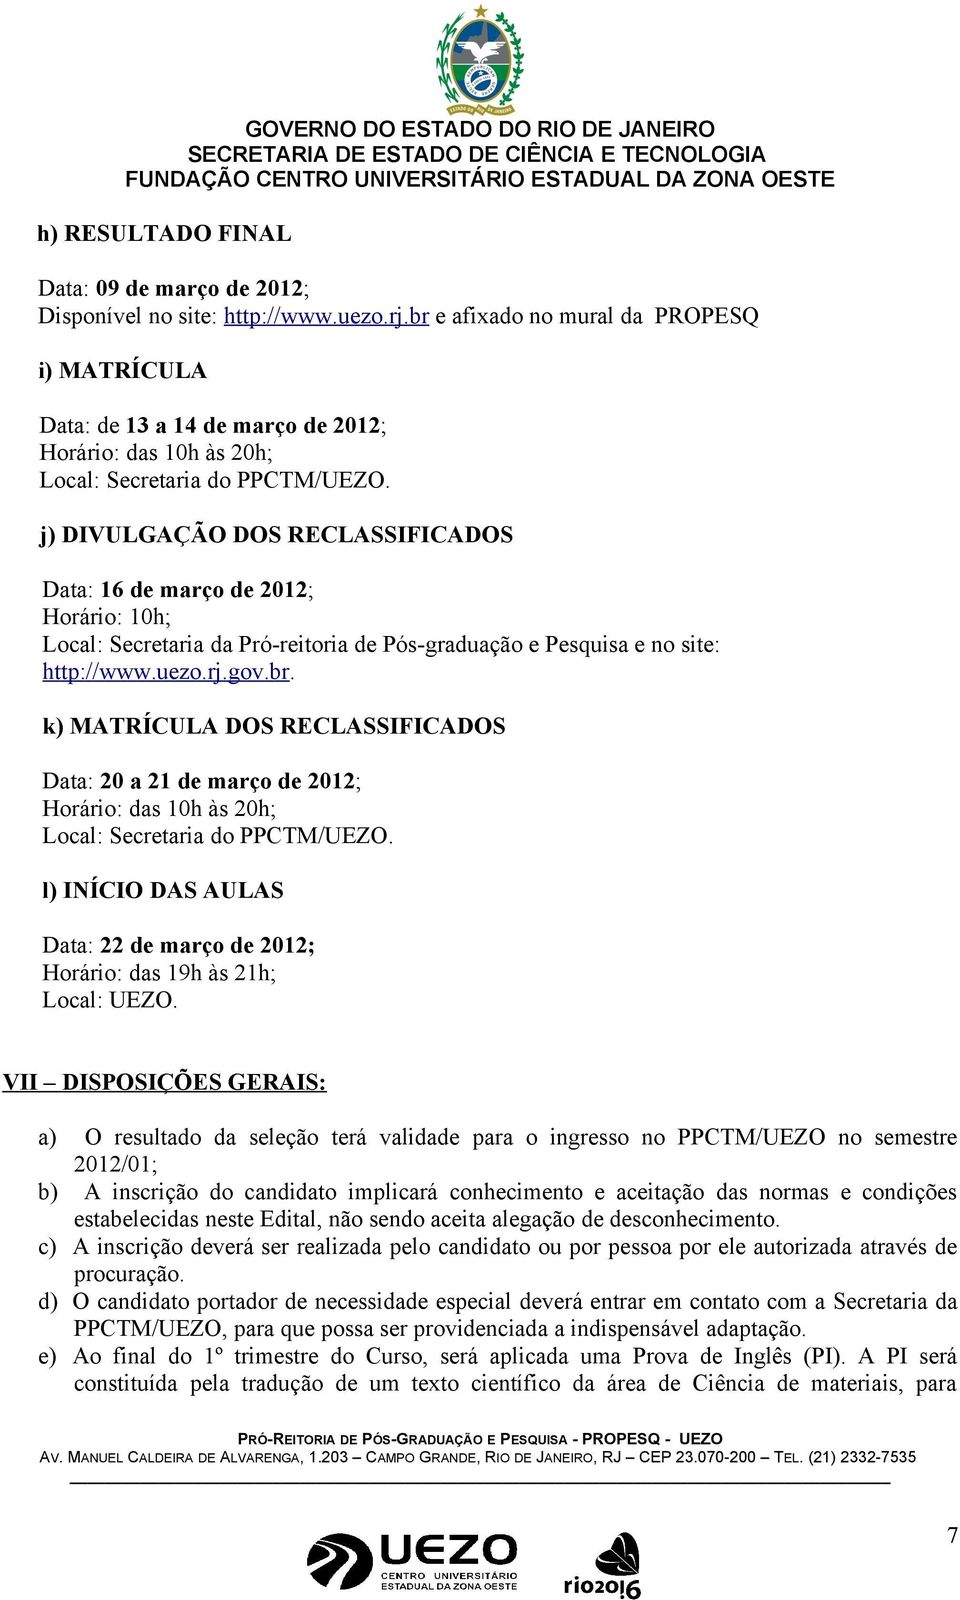 j) DIVULGAÇÃO DOS RECLASSIFICADOS Data: 16 de março de 2012; Horário: 10h; Local: Secretaria da Pró-reitoria de Pós-graduação e Pesquisa e no site: http://www.uezo.rj.gov.br.